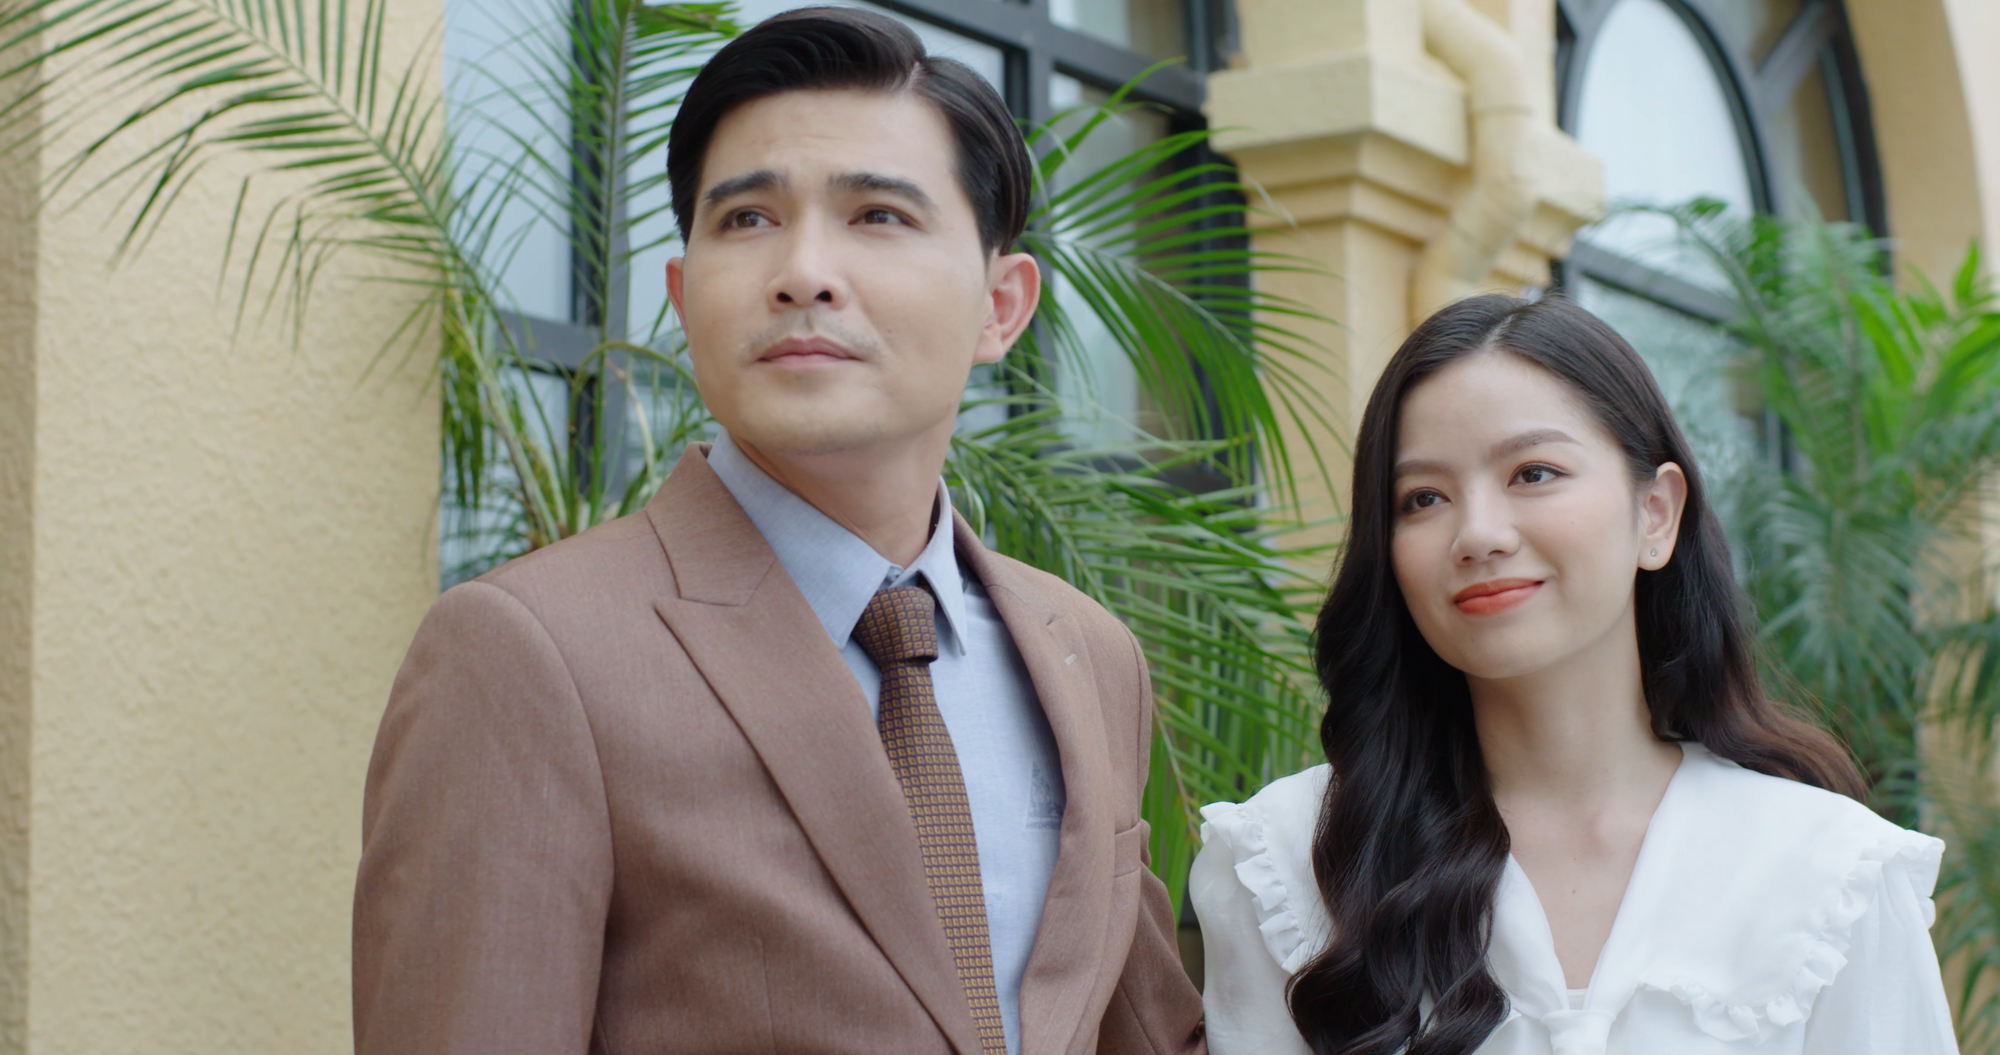 Phim do Quang Sự, Lê Hạ Anh đóng chính lên Netflix - Ảnh 6.